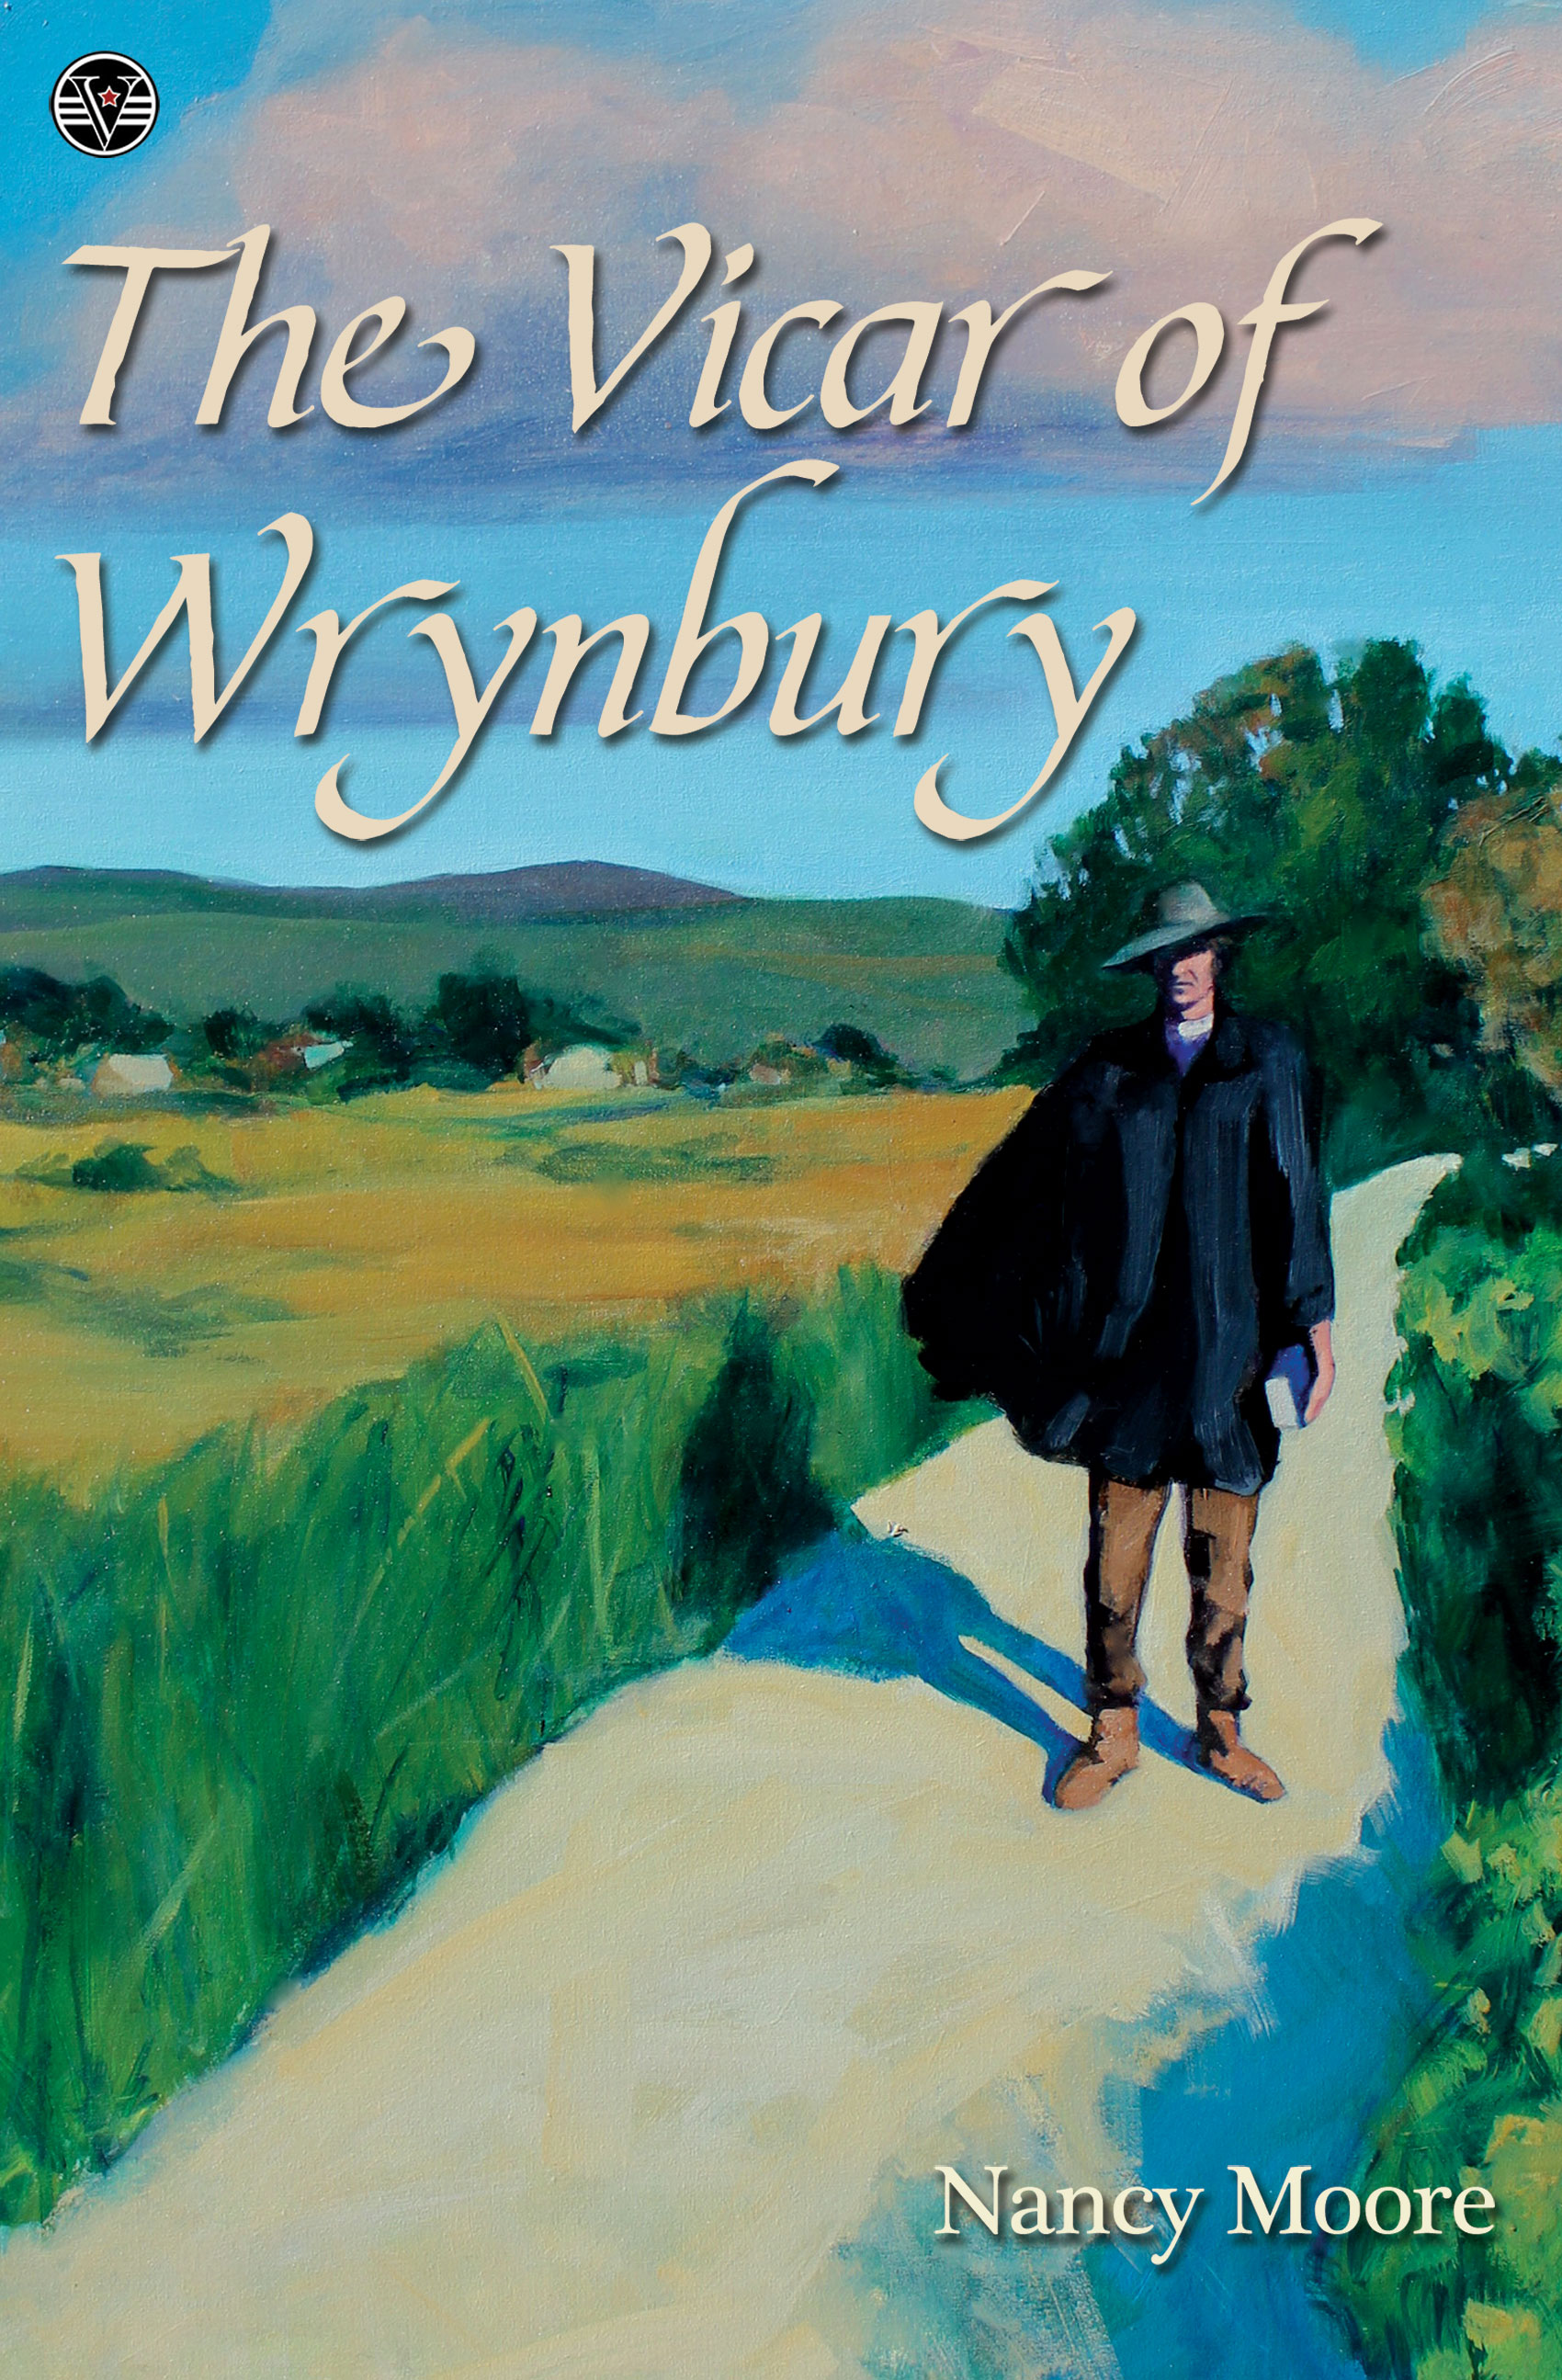 The Vicar of Wrynbury by Nancy Moore